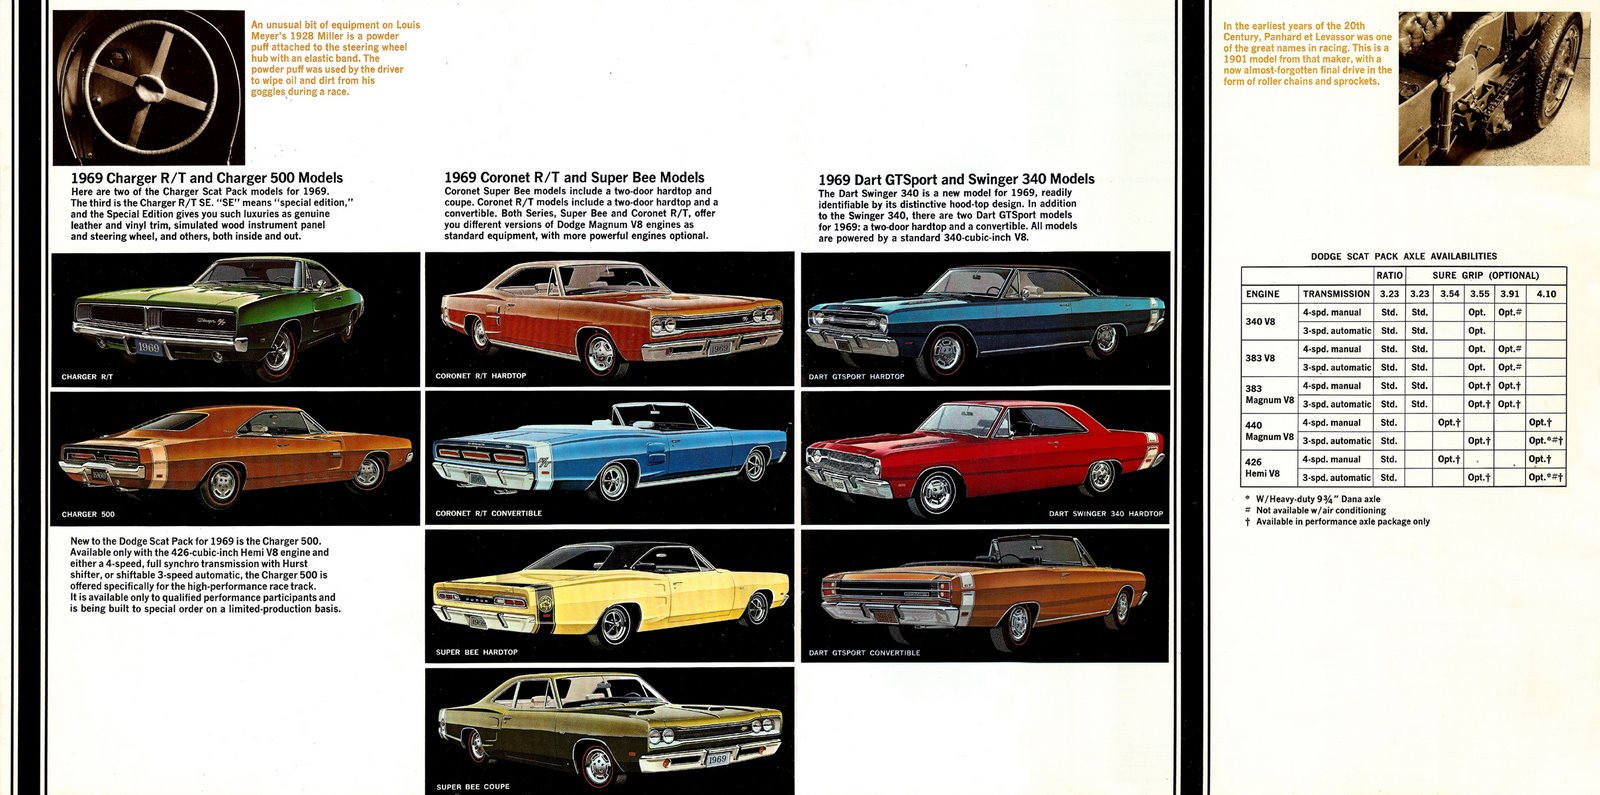 n_1969 Dodge Super Cars-10-11.jpg